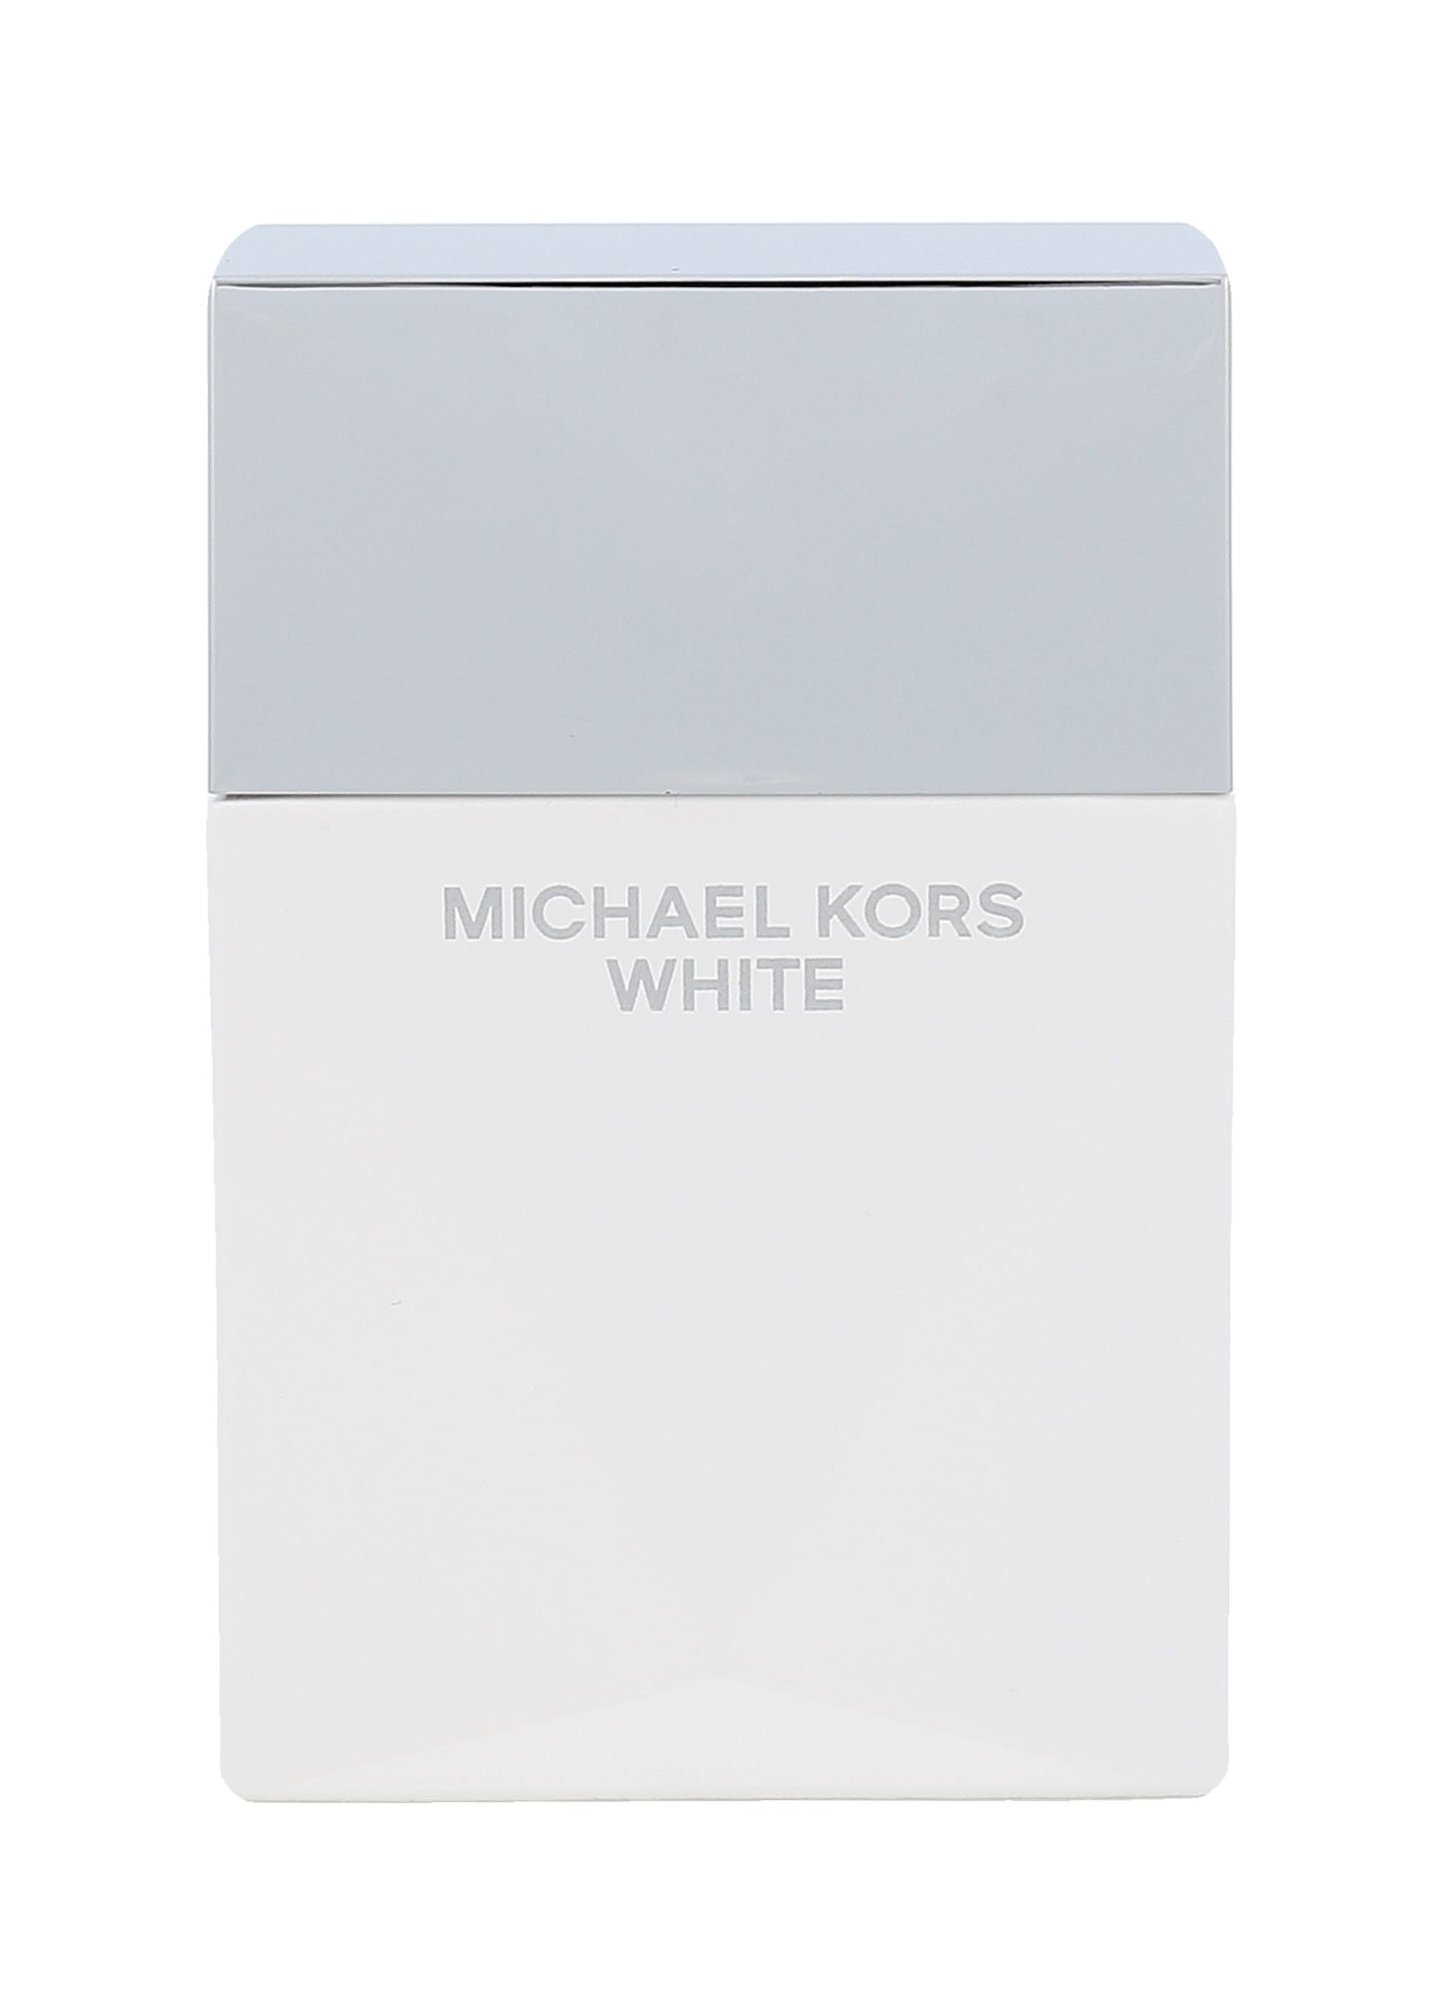 Michael Kors Michael Kors White